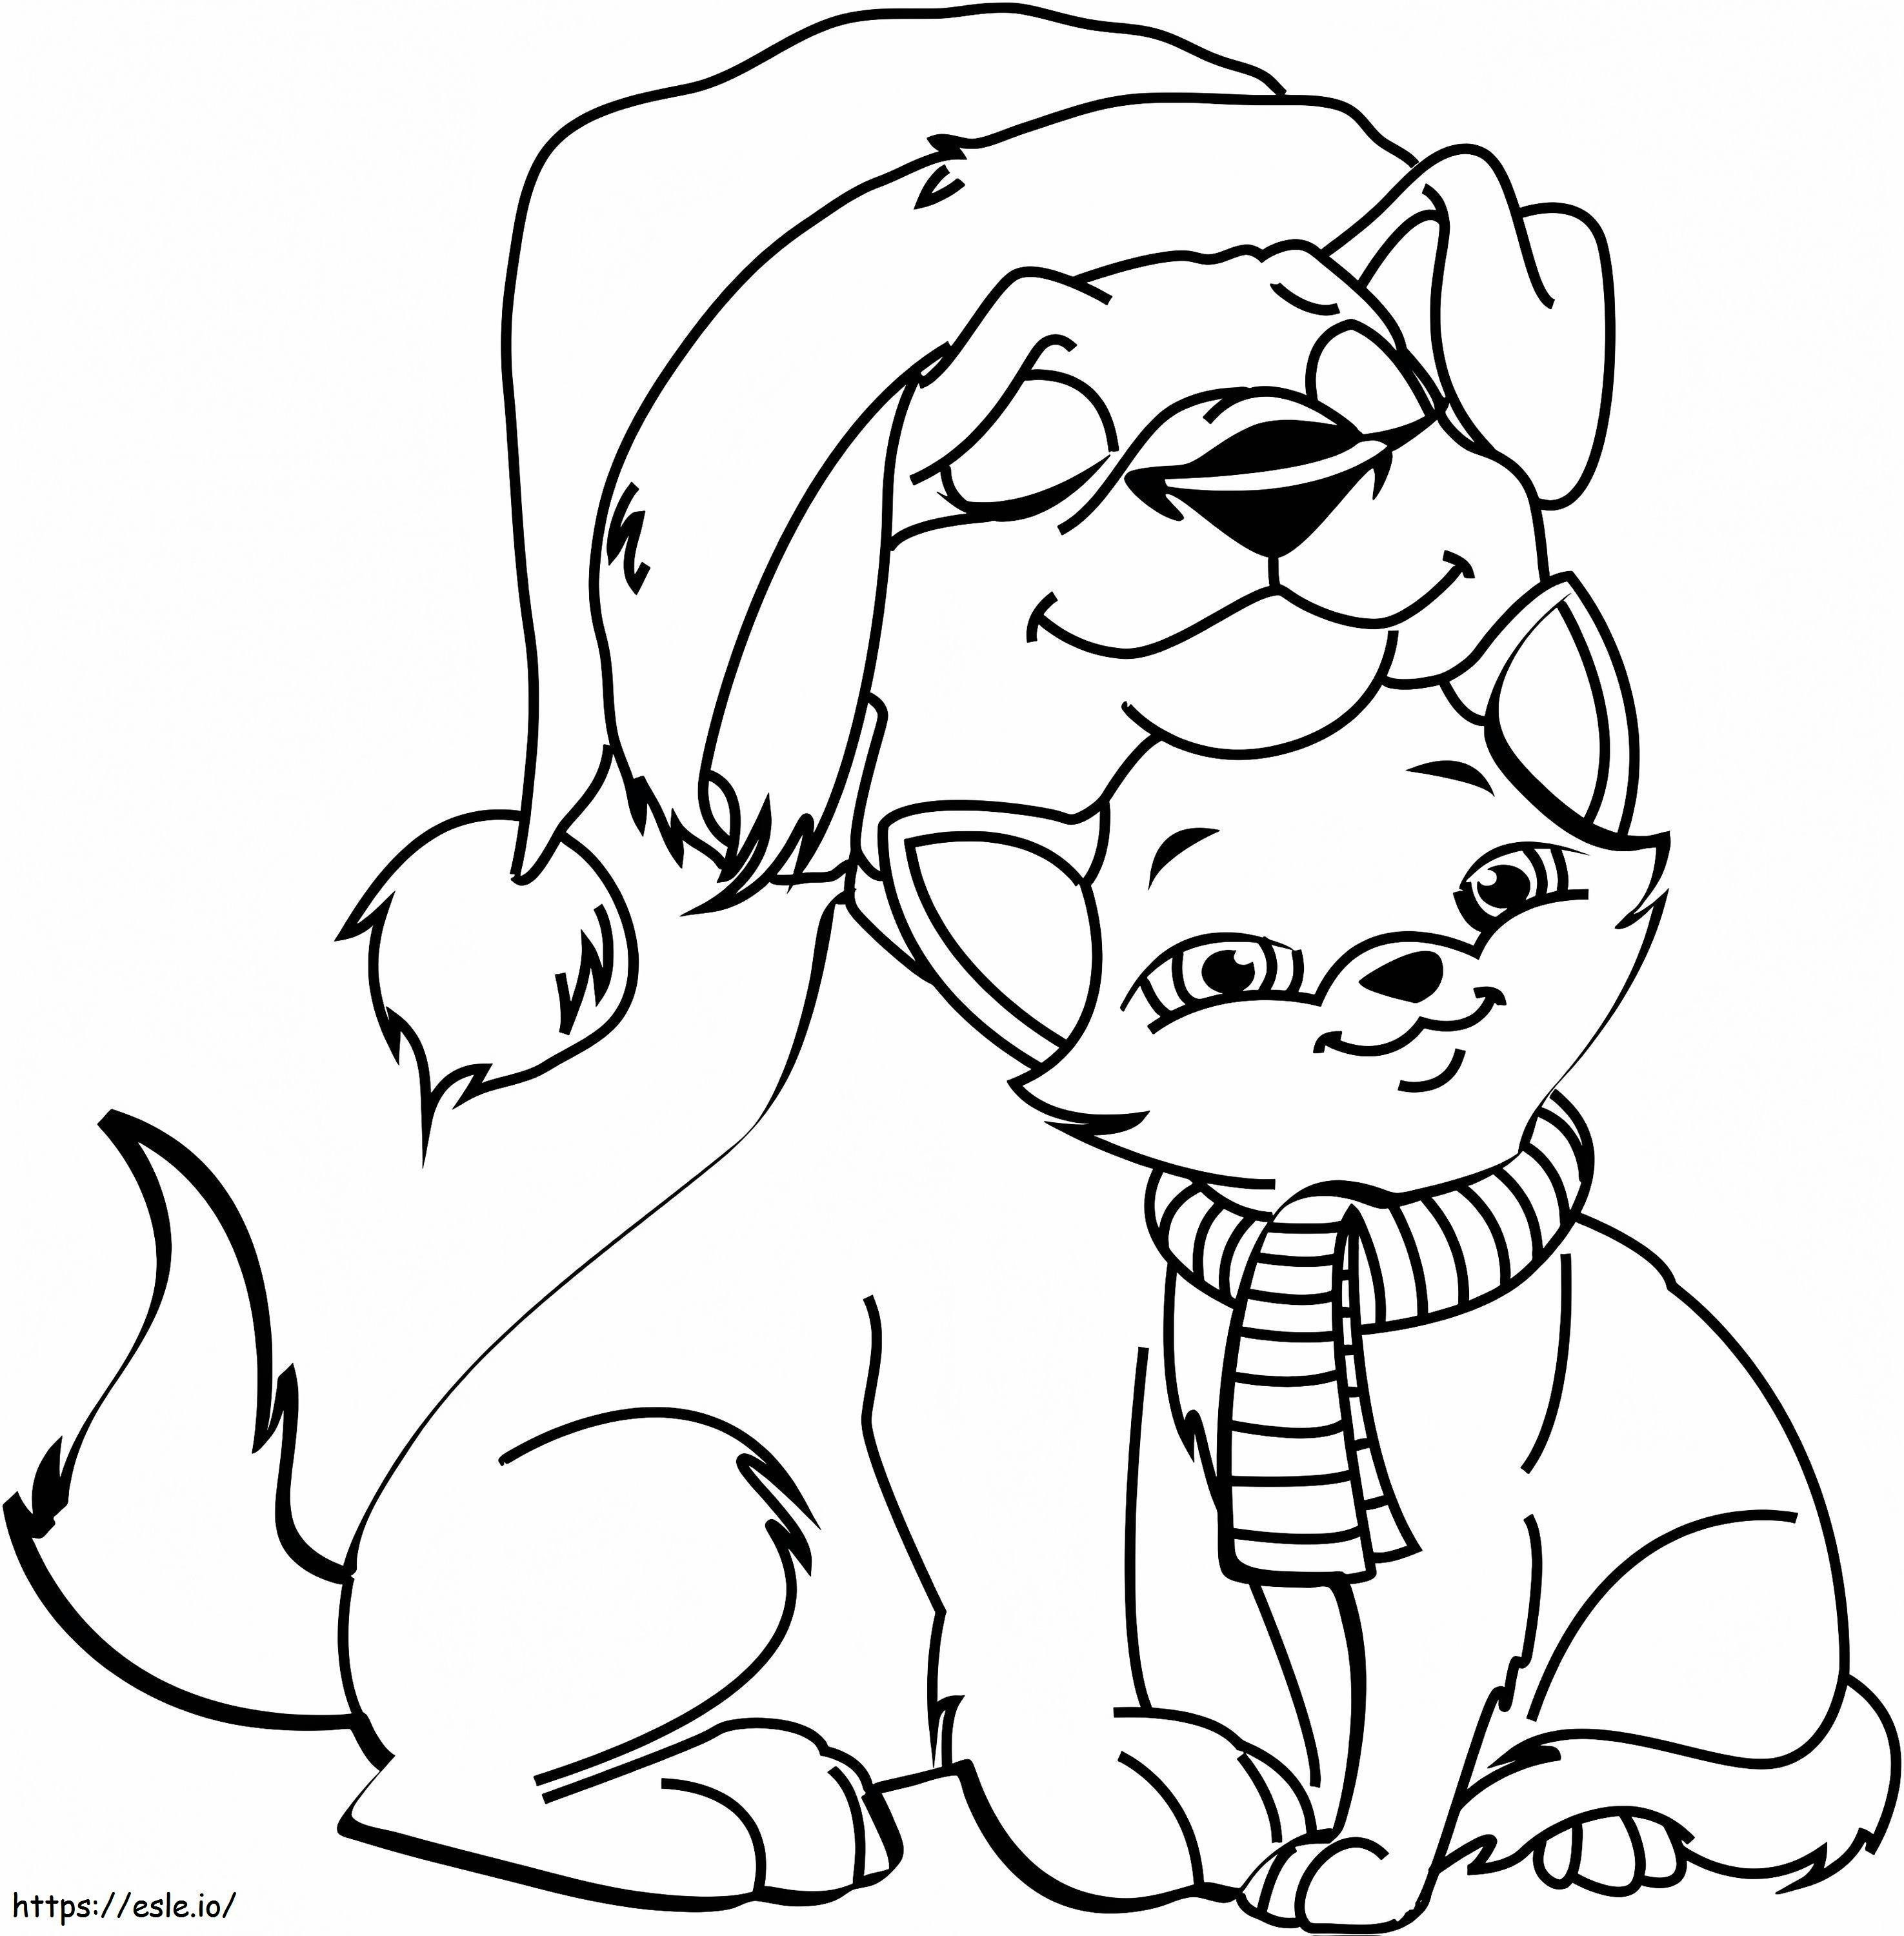 1530676180 Gato e Cachorro de Natal A4 para colorir